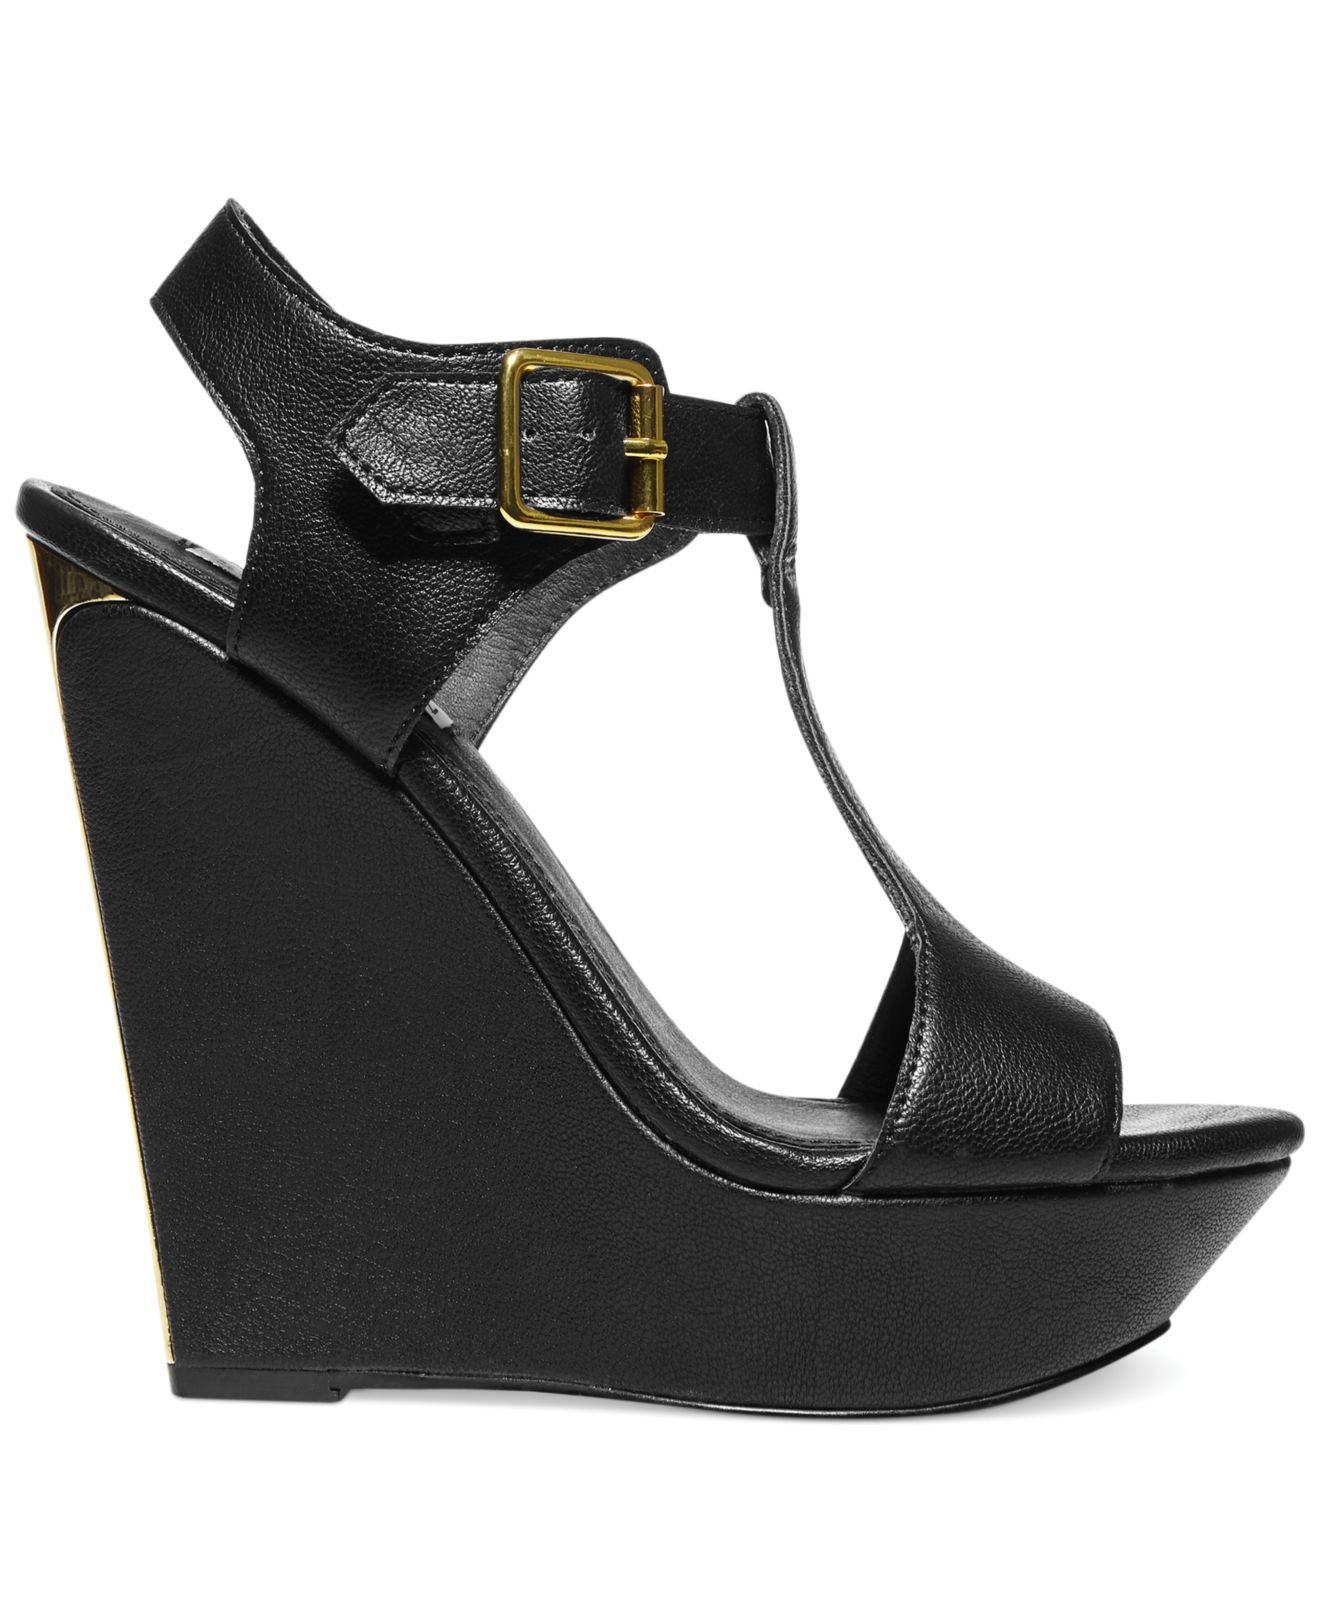 Lyst - Steve madden Women'S Arkadia Platform Wedge Sandals in Black